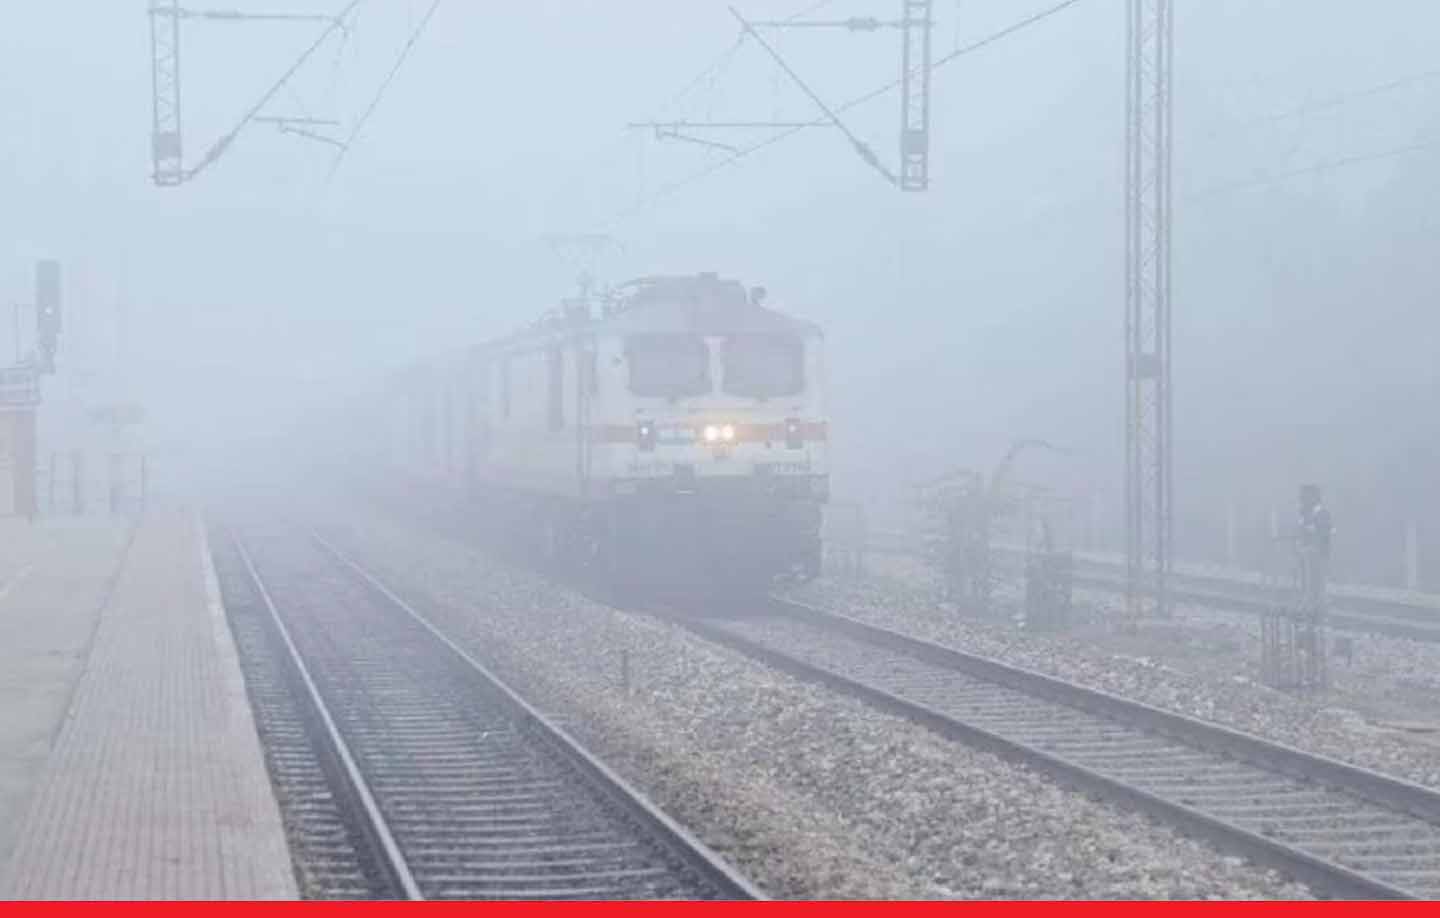 Train Cancelled: ठंड ने रोकी ट्रेनों की रफ्तार, रेलवे ने कई ट्रेनों को किया निरस्त कर दिया